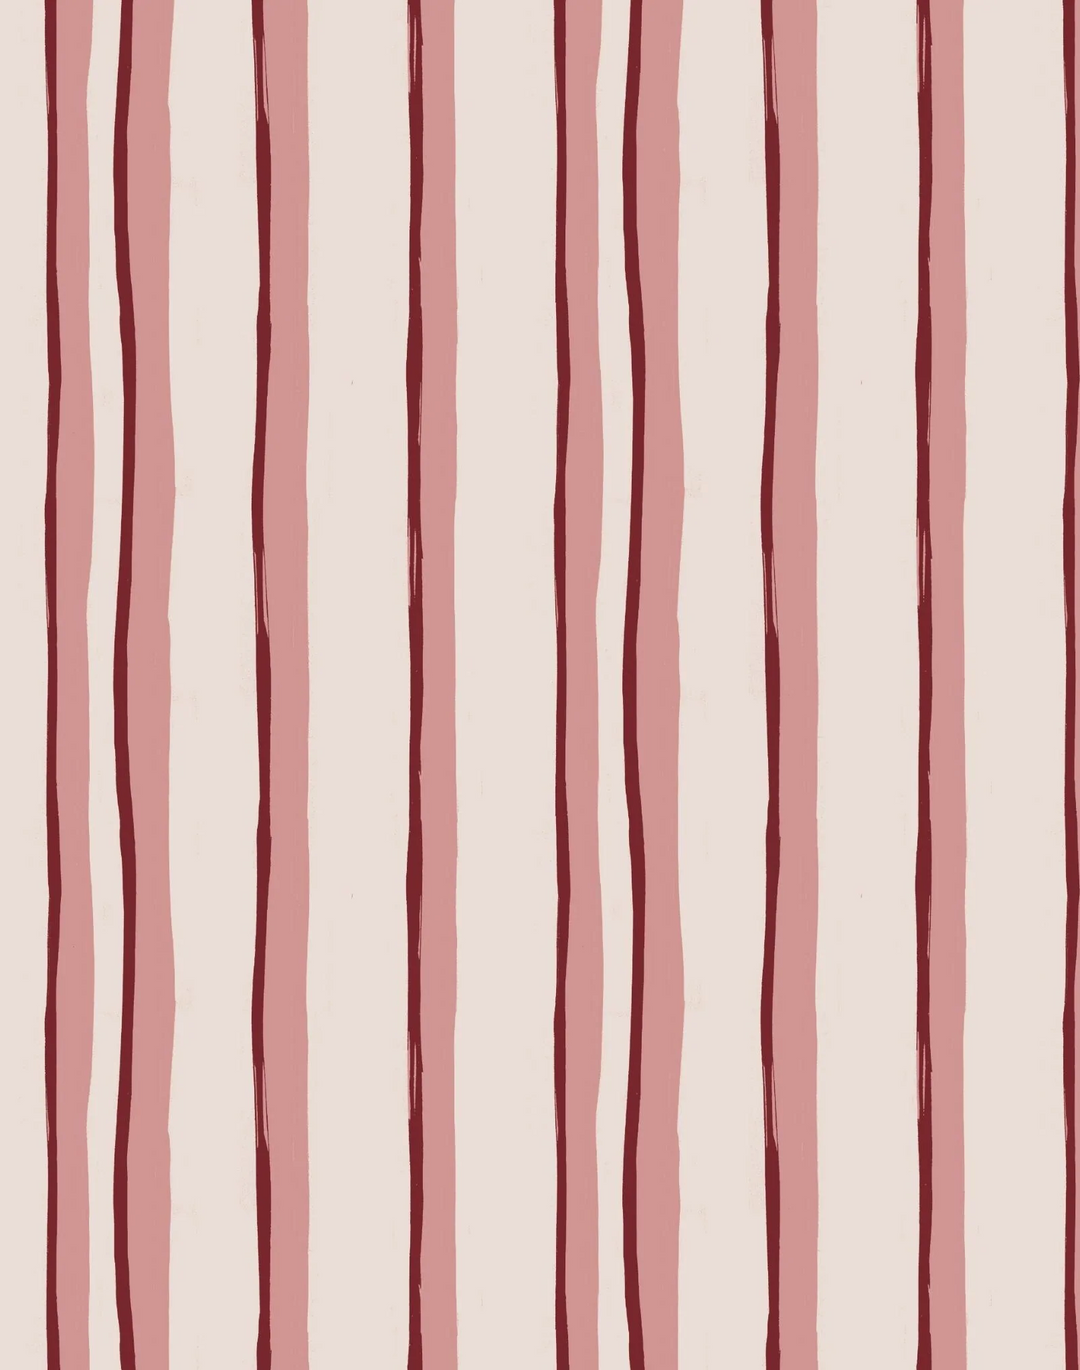 Somerset Stripes, Pinks